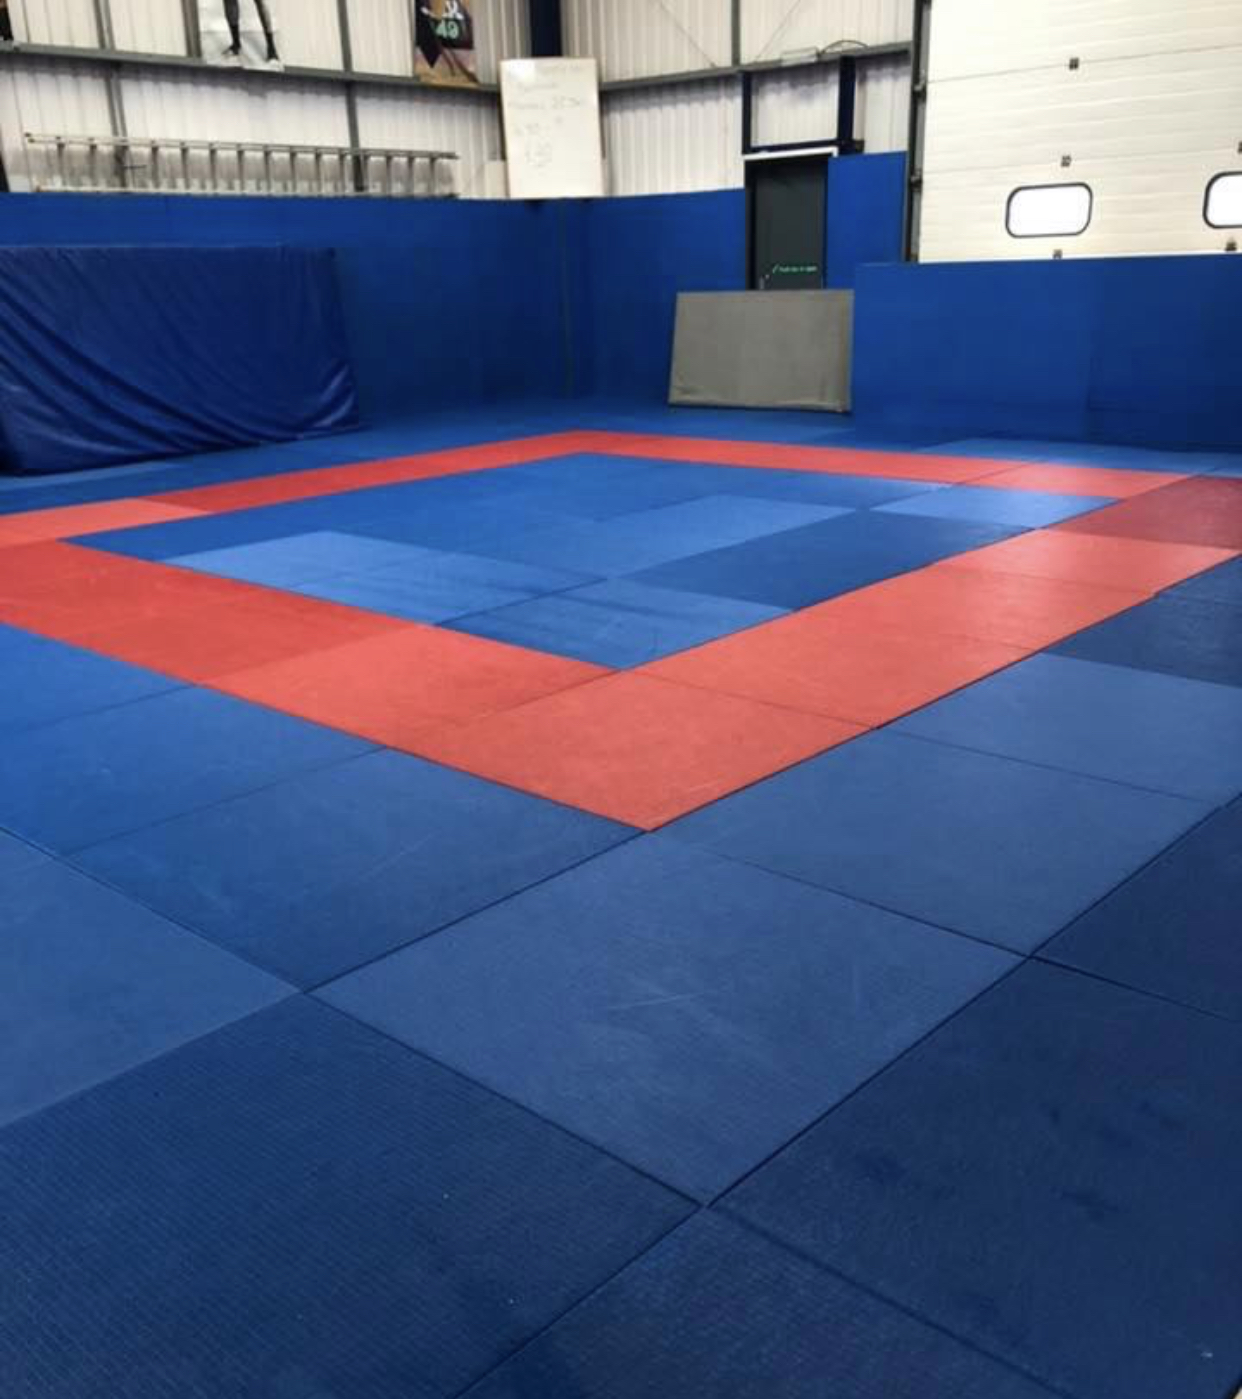 Brazilian Jiu-Jitsu Gallery